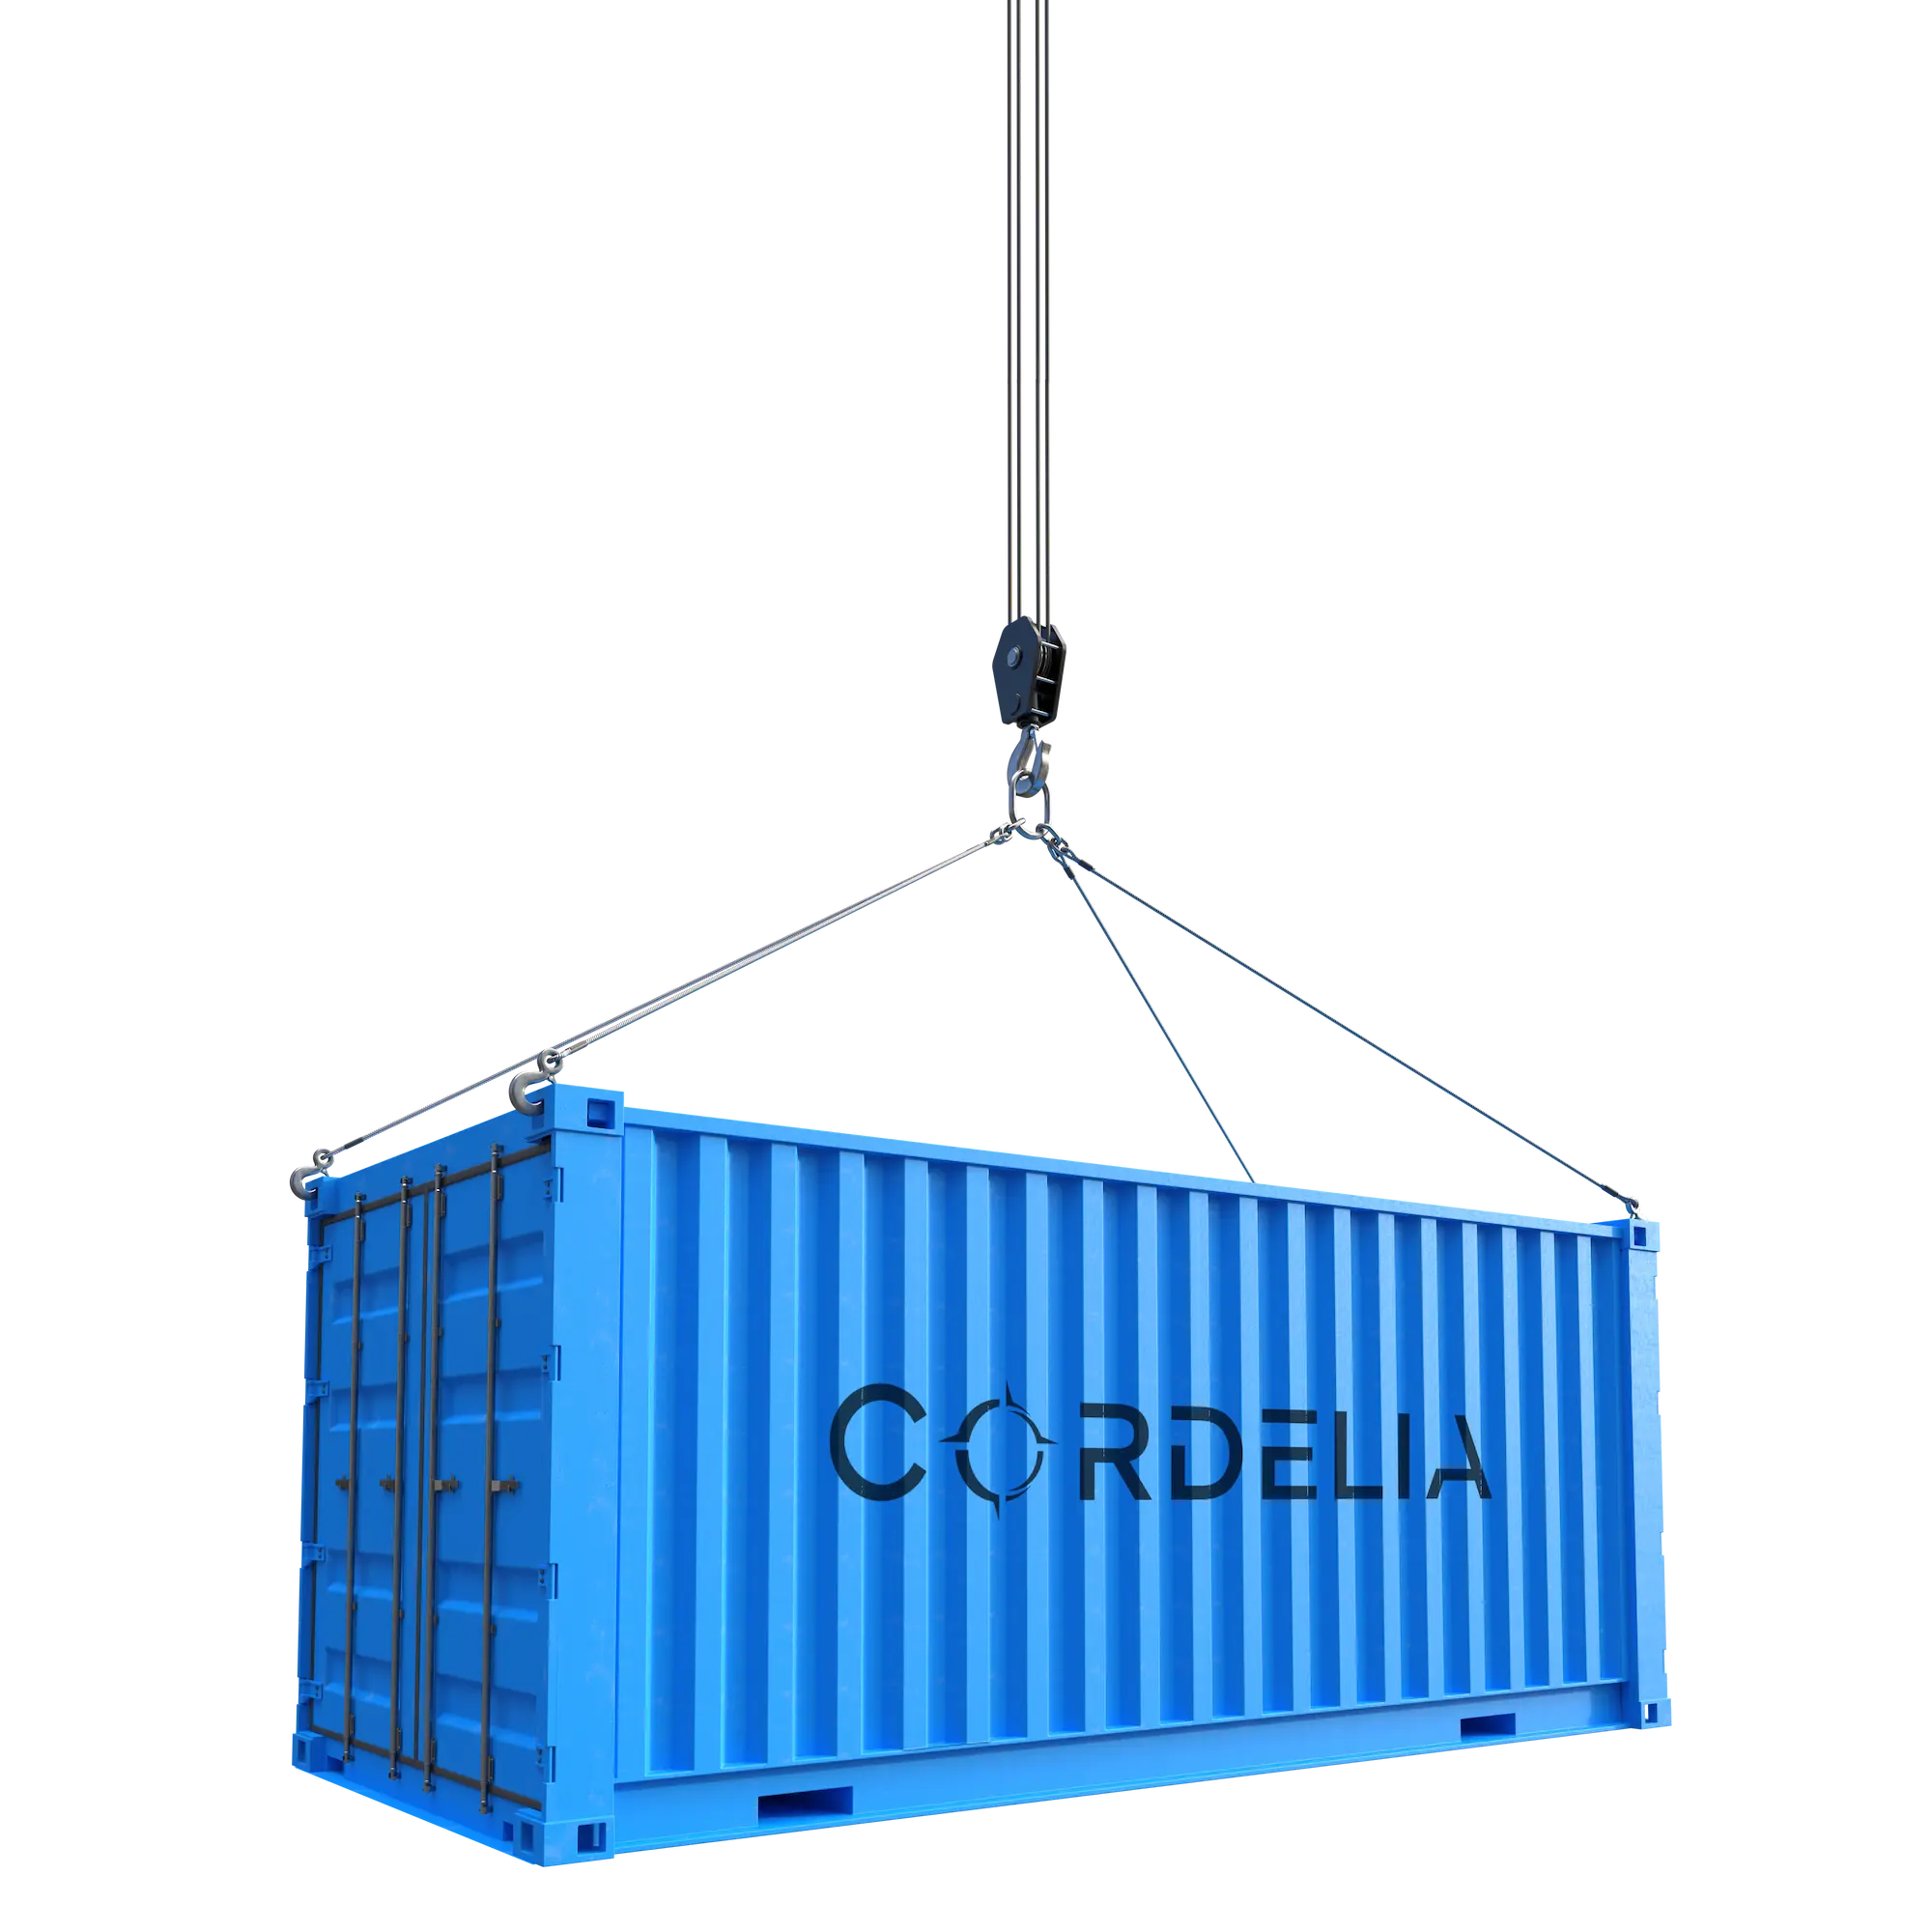 Cordelia Container